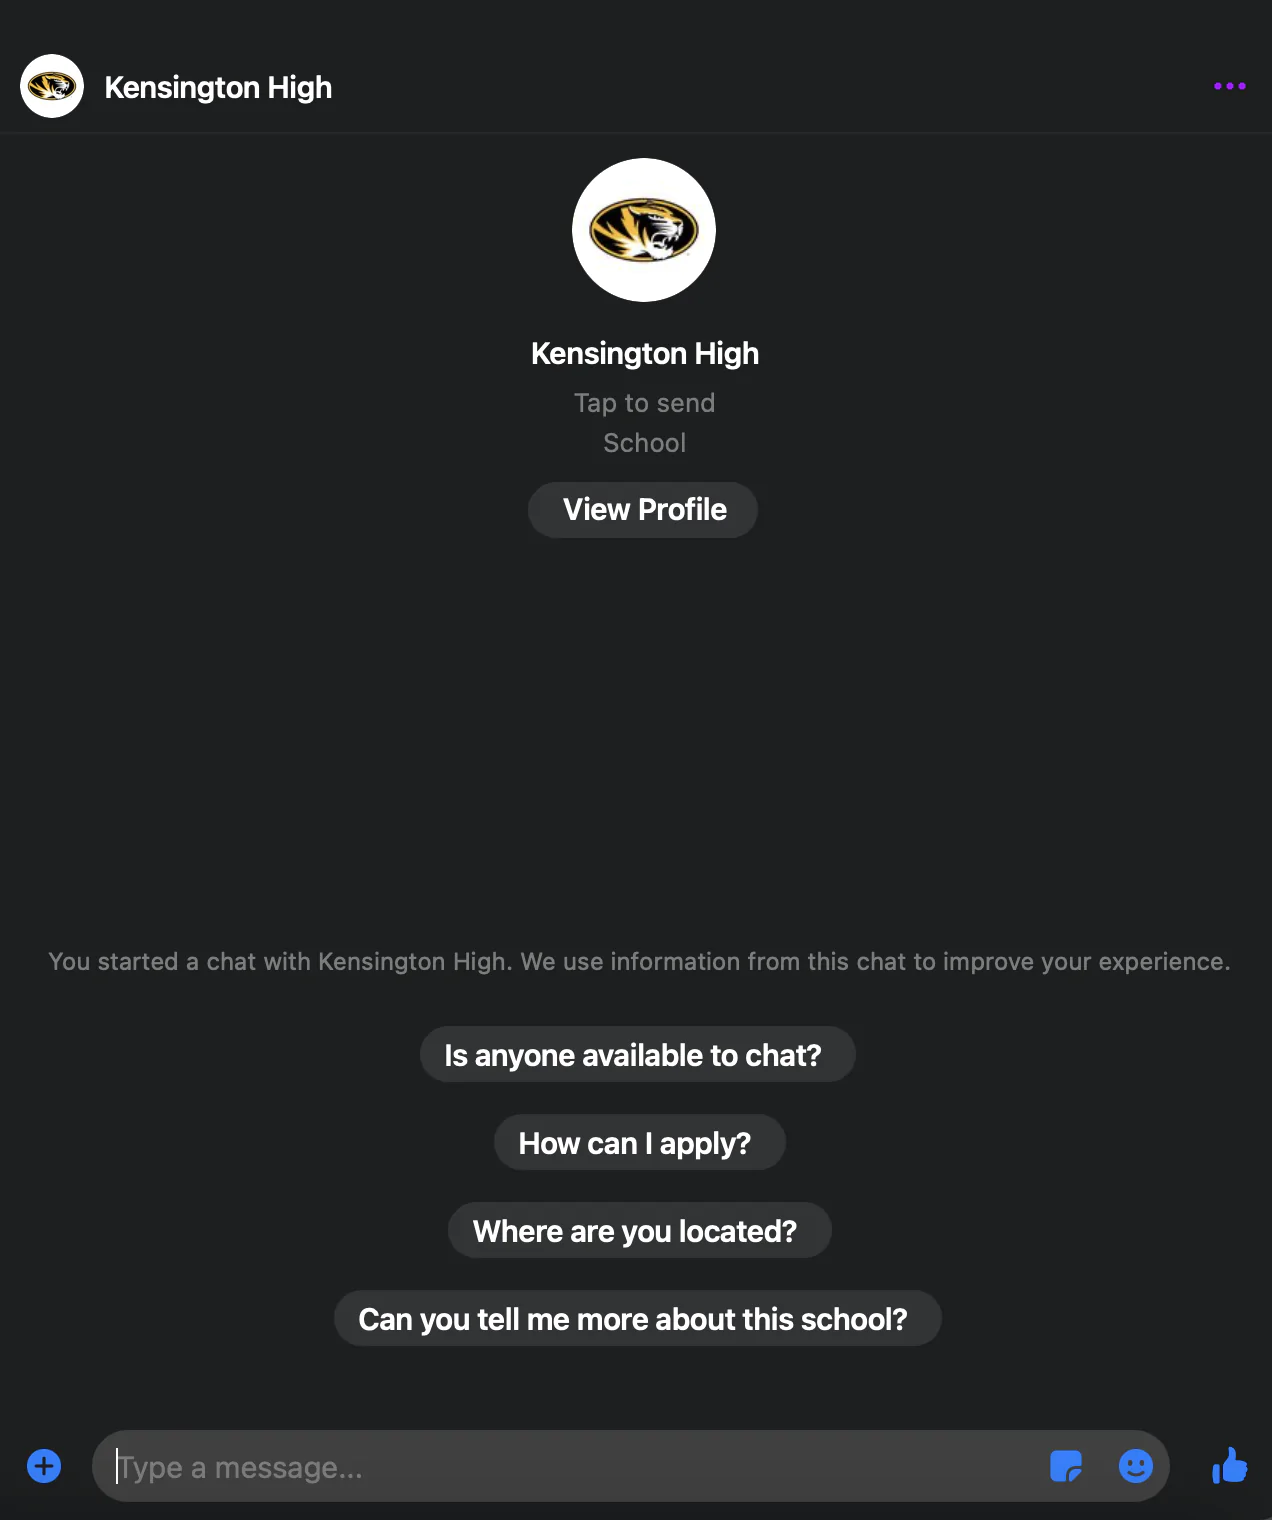 Kensinton ofrece un ejemplo de chatbot educativo que responde preguntas precisas